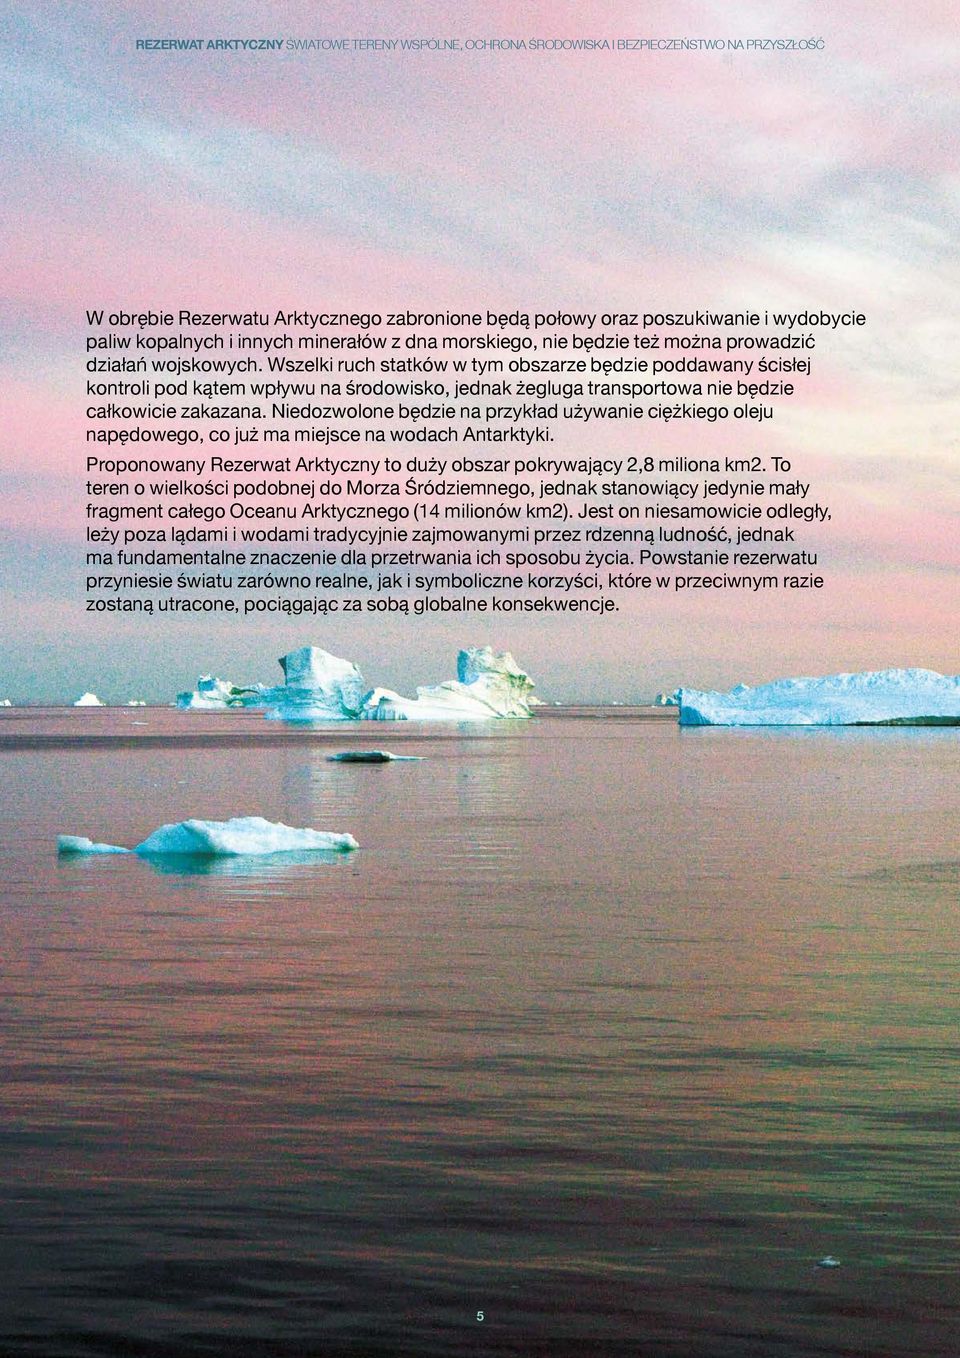 Niedozwolone będzie na przykład używanie ciężkiego oleju napędowego, co już ma miejsce na wodach Antarktyki. Proponowany Rezerwat Arktyczny to duży obszar pokrywający 2,8 miliona km2.